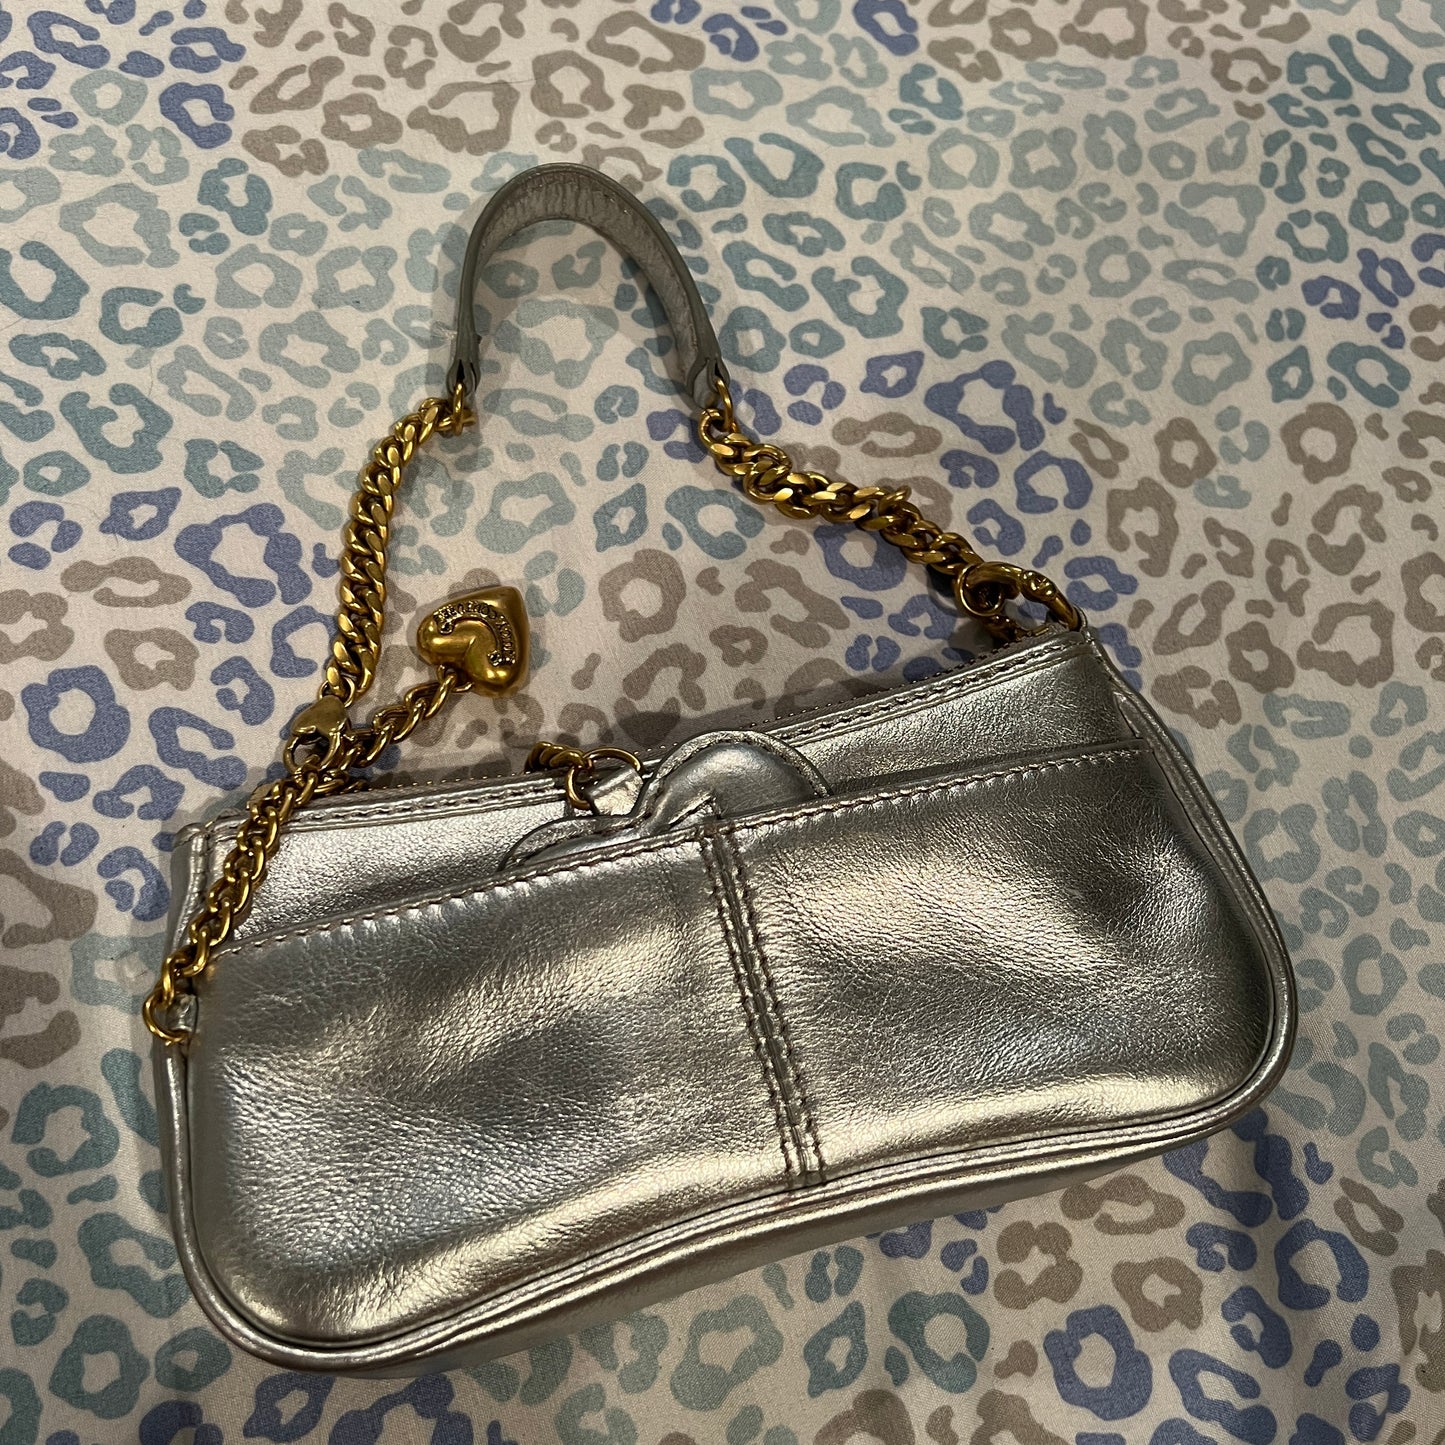 Rare Vintage Silver Juicy Couture Mini Bag Purse Handbag Y2K from 2005